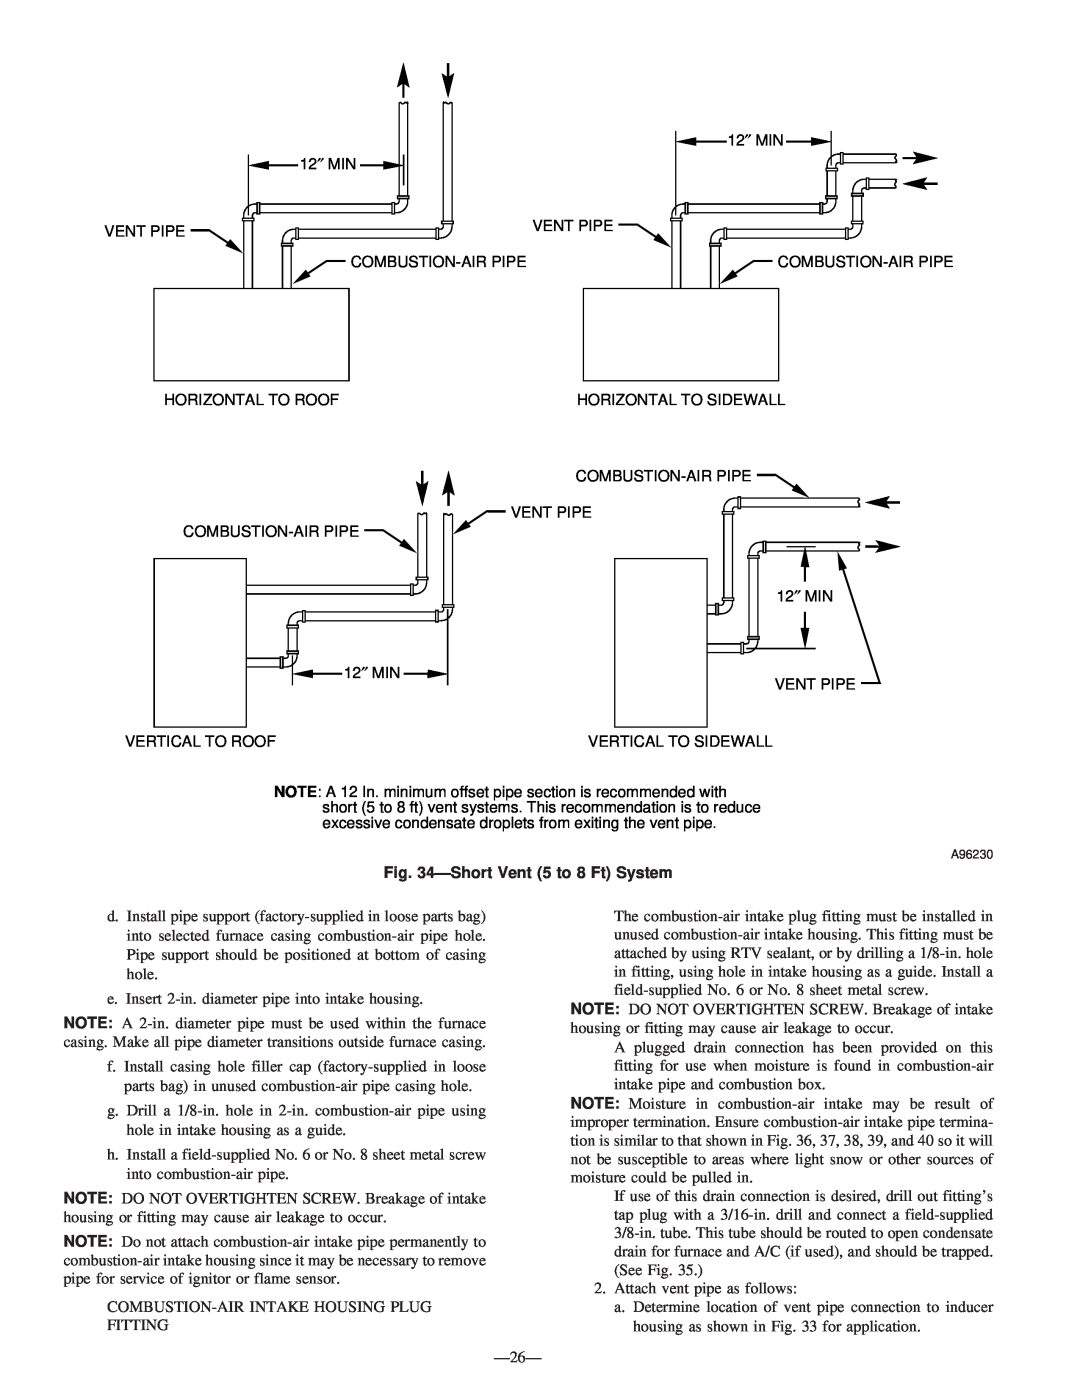 Bryant 340MAV instruction manual ShortVent 5 to 8 Ft System 